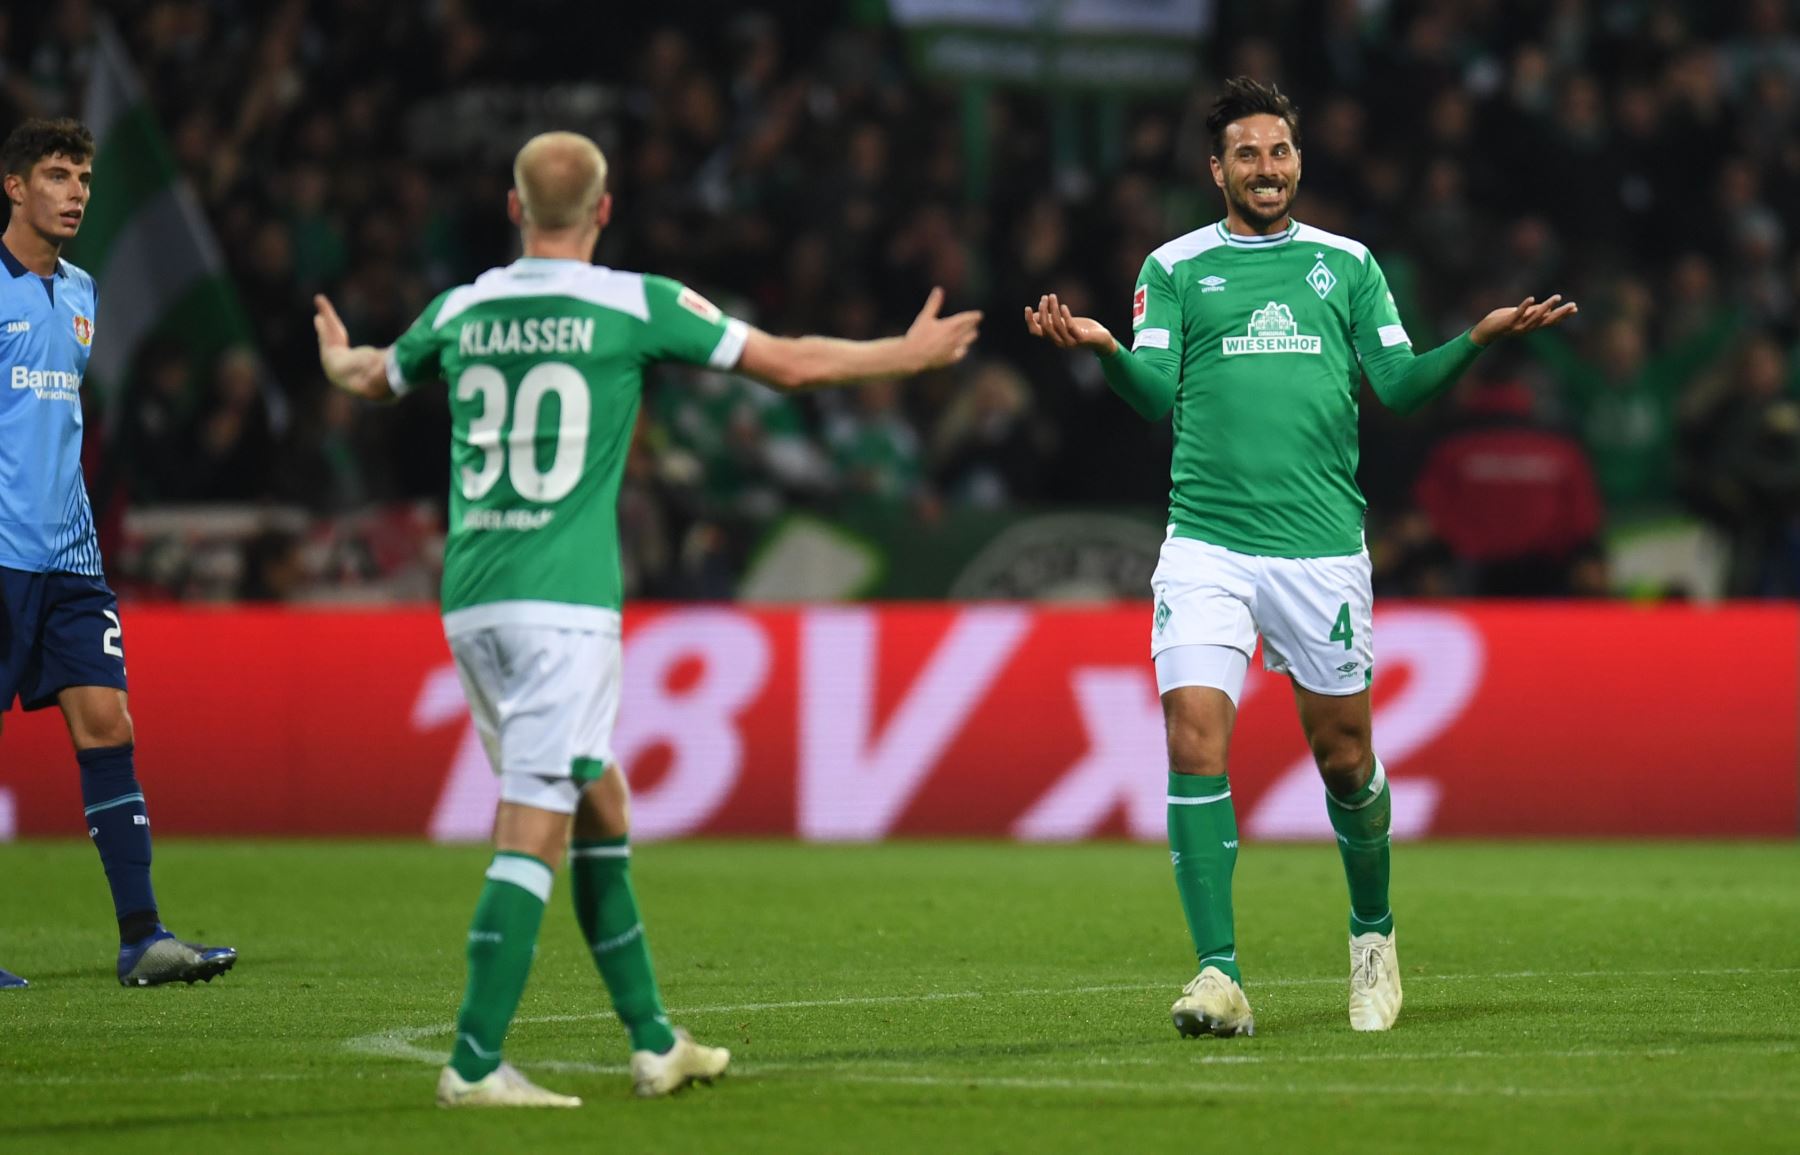 El delantero peruano de Bremen, Claudio Pizarro, reacciona durante el partido de fútbol alemán de primera división de la Bundesliga Werder Bremen contra Bayer 04 Leverkusen.
Foto: AFP